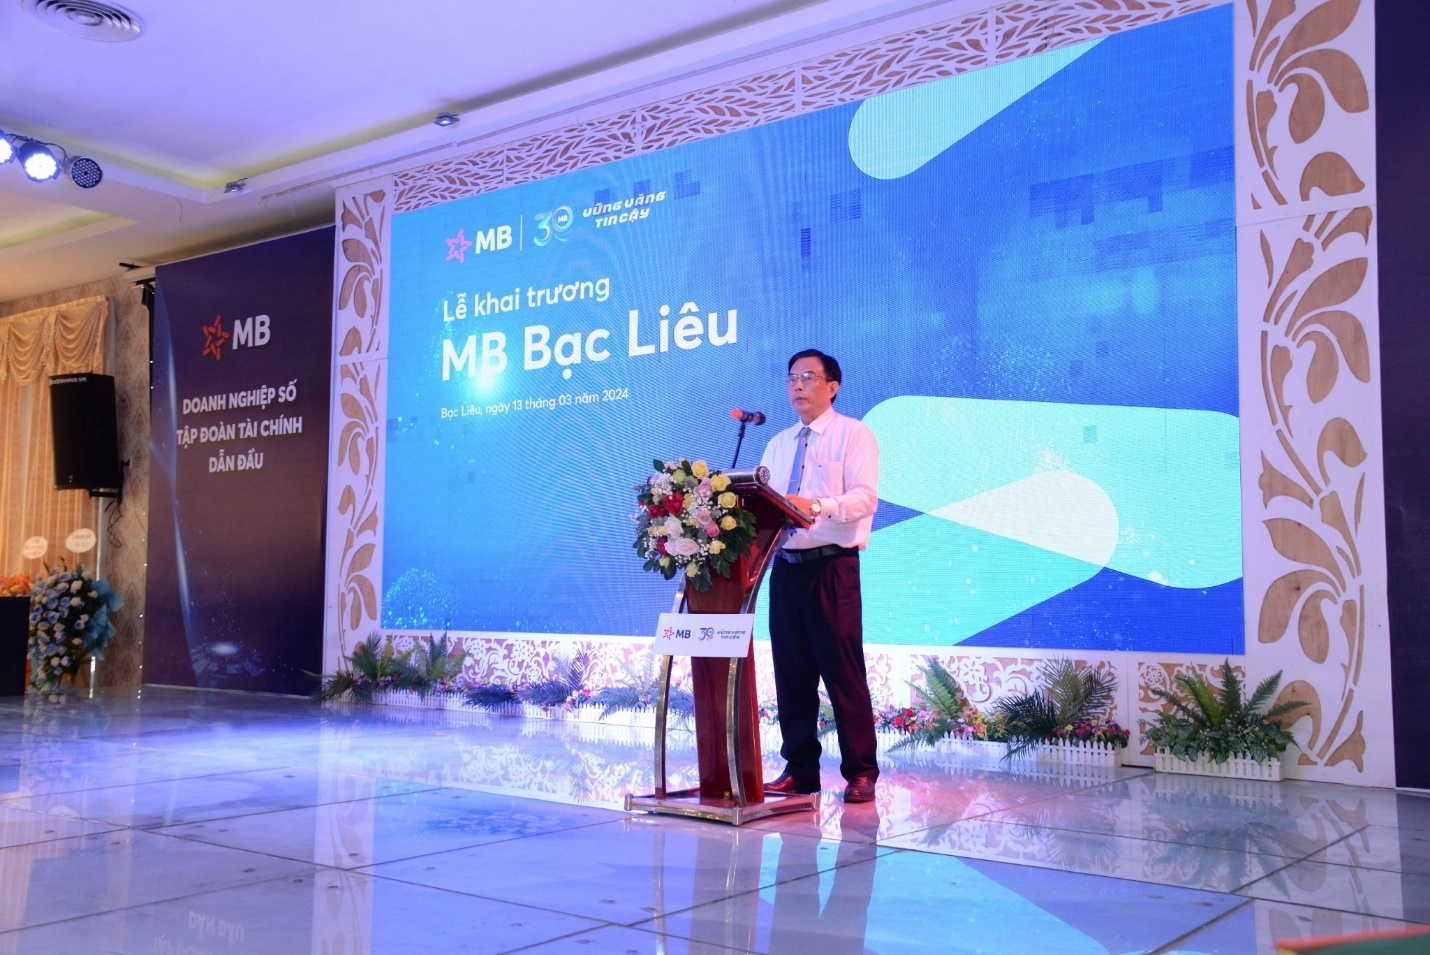 Ông Lê Văn Măng, Giám đốc NHNN chi nhánh tỉnh Bạc Liêu khẳng định NHNN sẽ tiếp tục đồng hành cùng MB